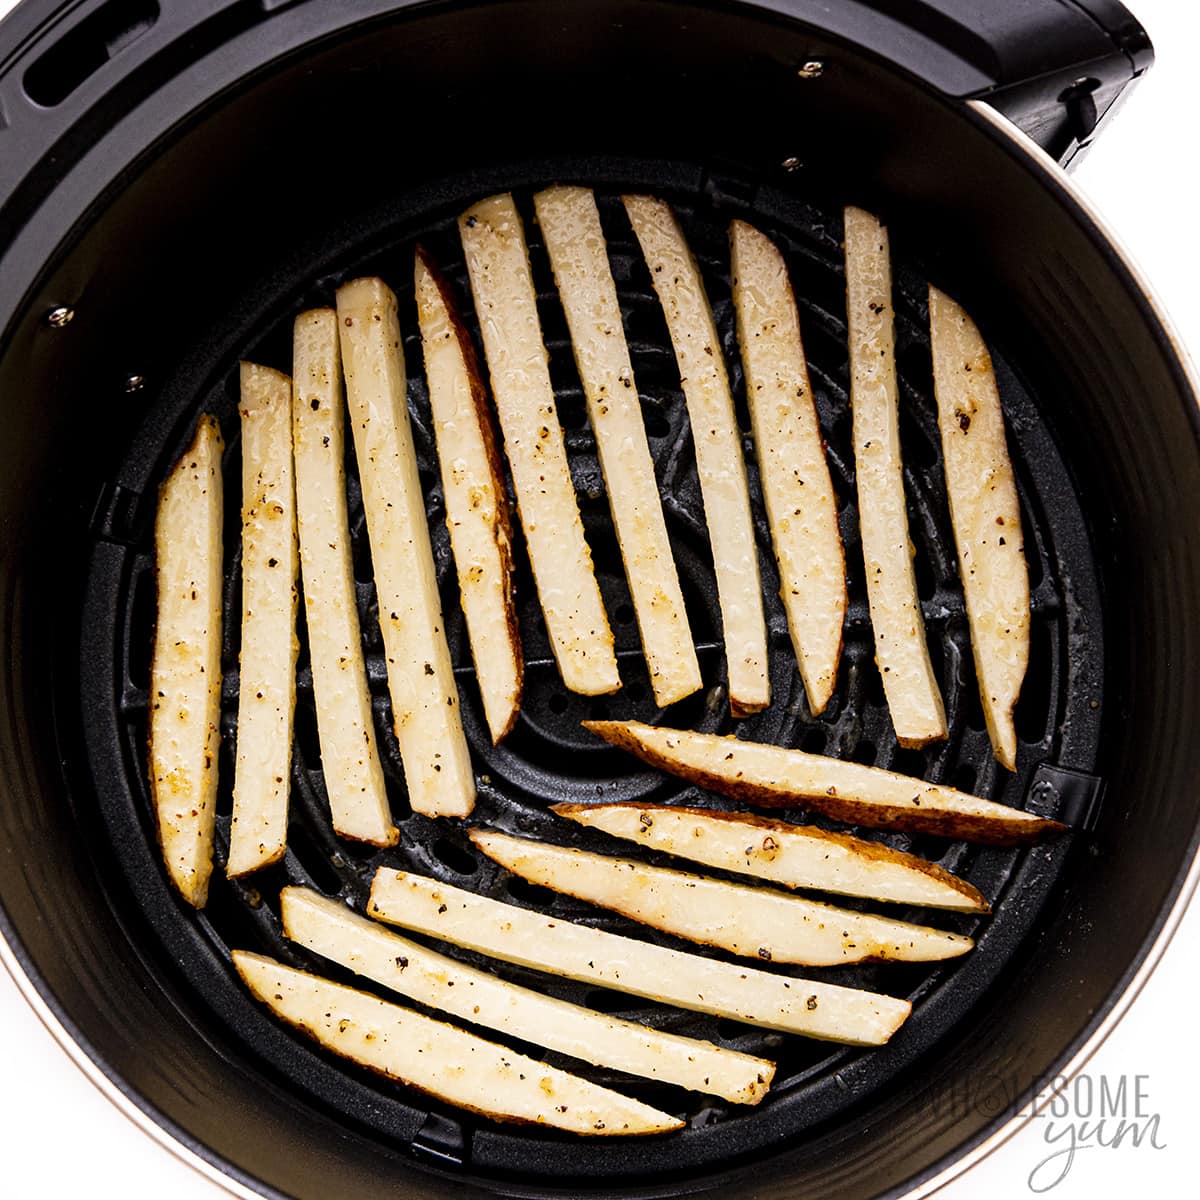 Raw fries in air fryer basket.